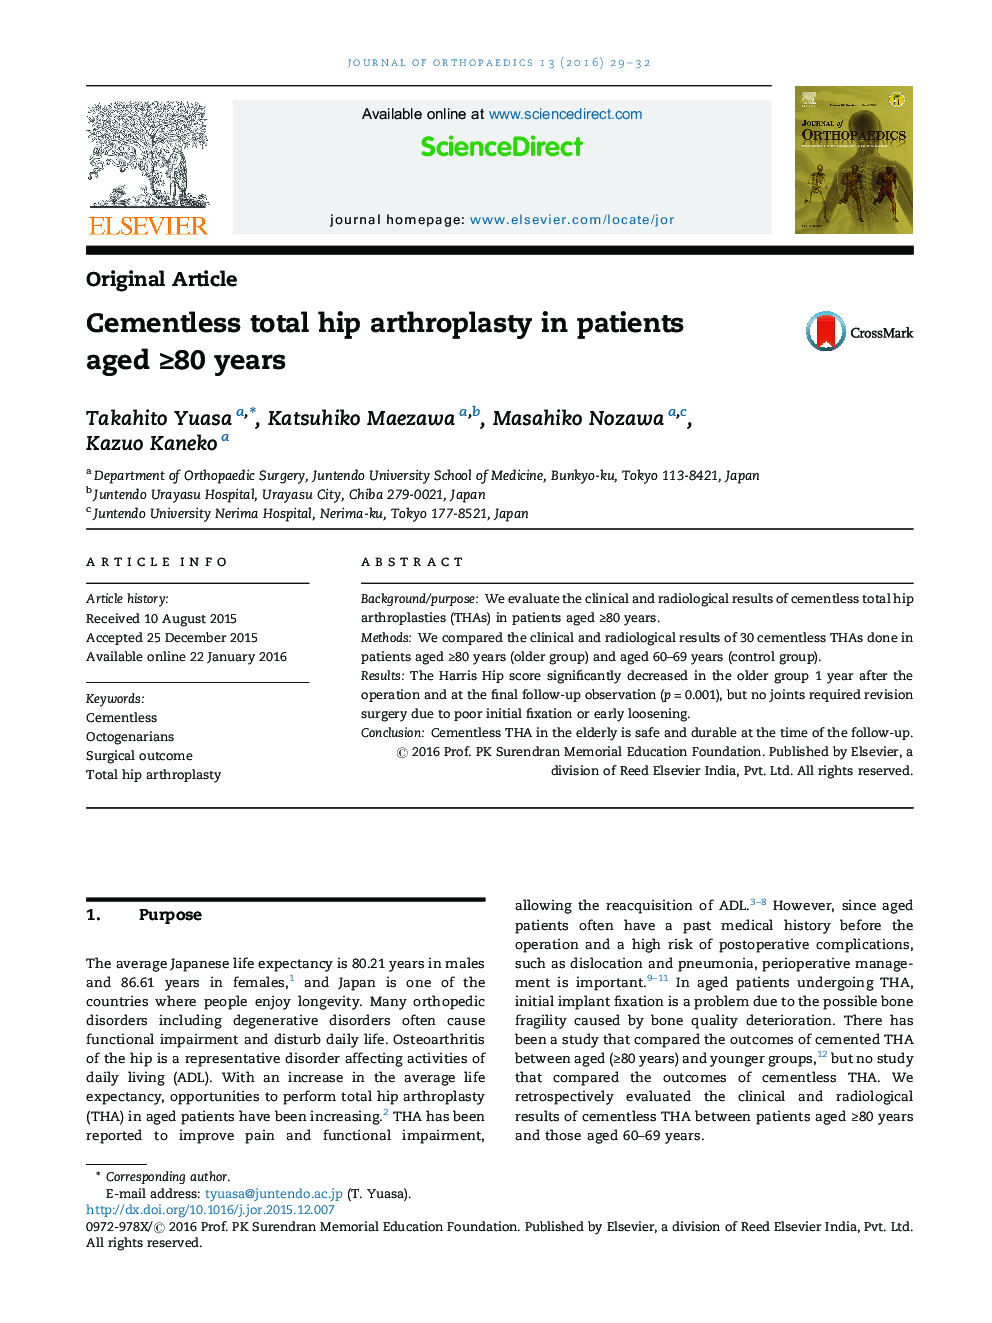 آرتروپلاستی کامل لگن بدون سیمان در بیماران بالای 80 سال سن